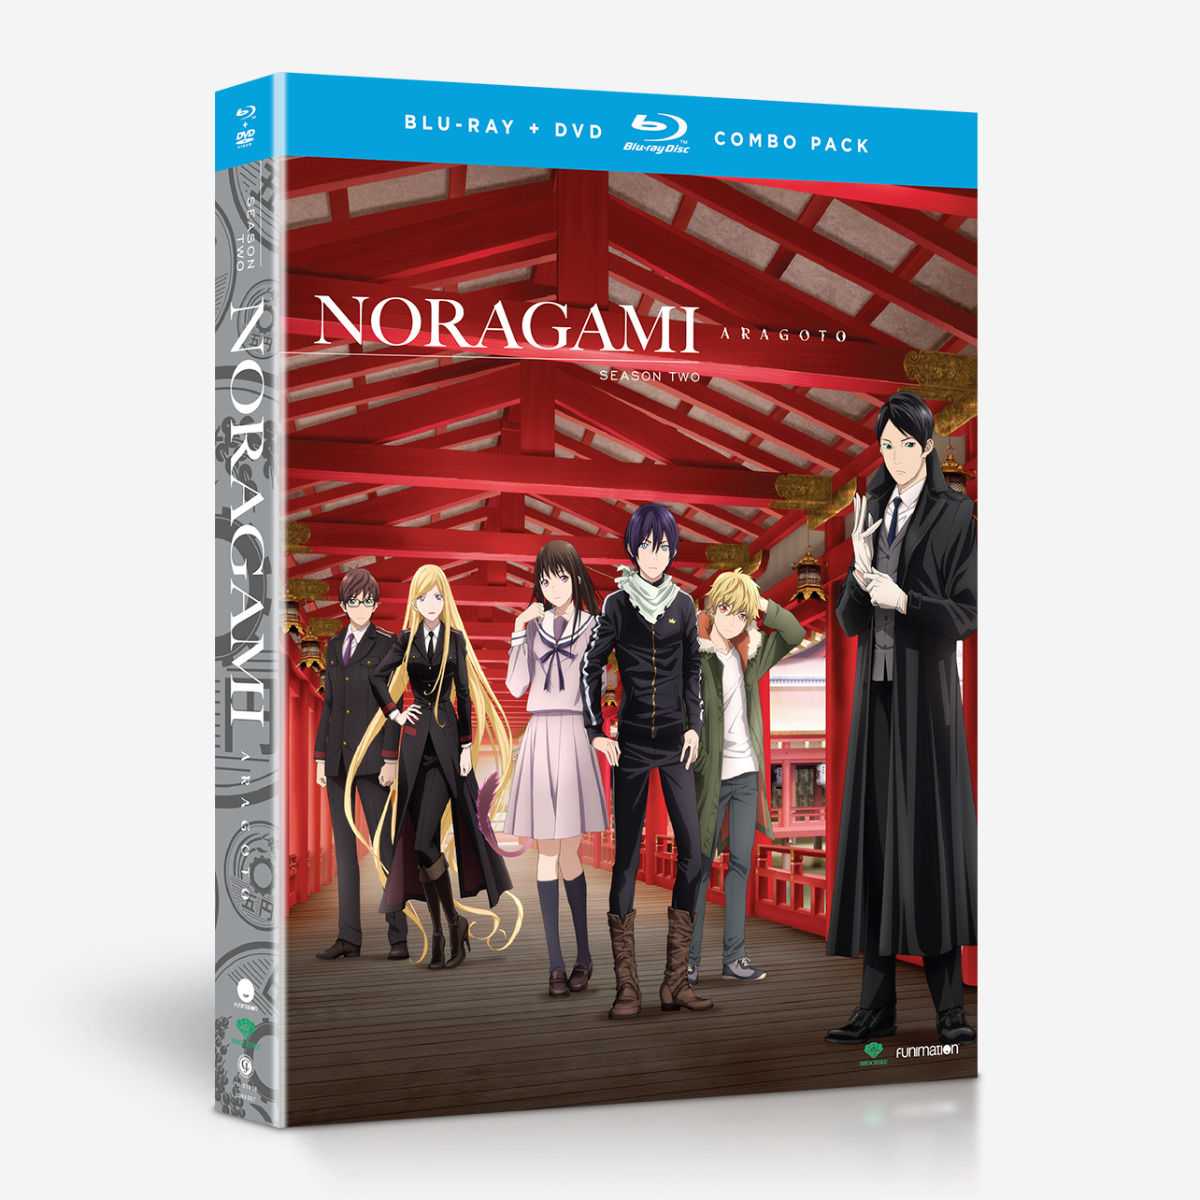 Noragami Aragoto - Characters & Staff 